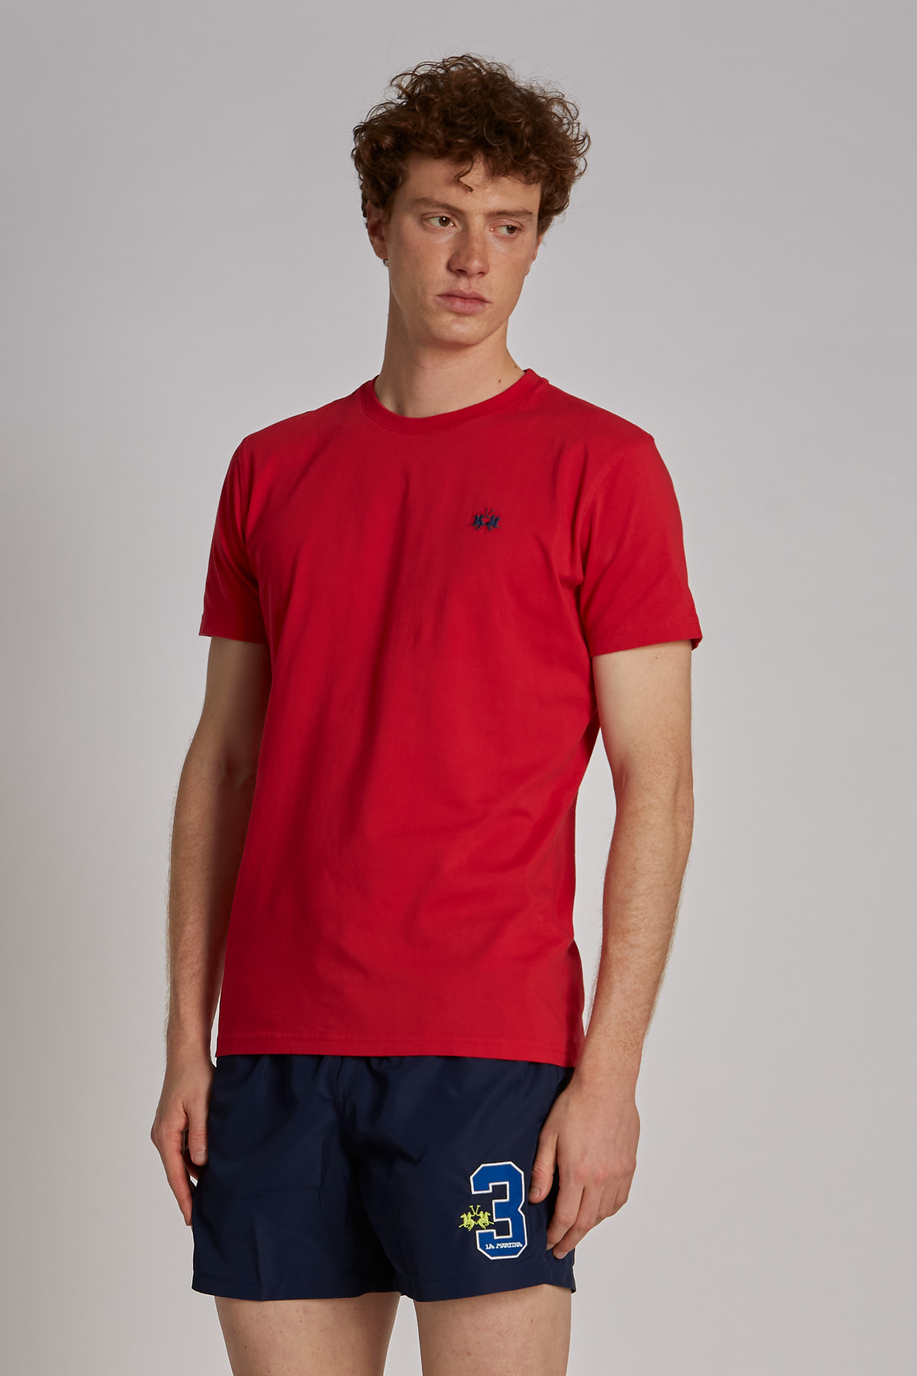 T-shirt da uomo a maniche corte in cotone regular fit - Casual | La Martina - Official Online Shop